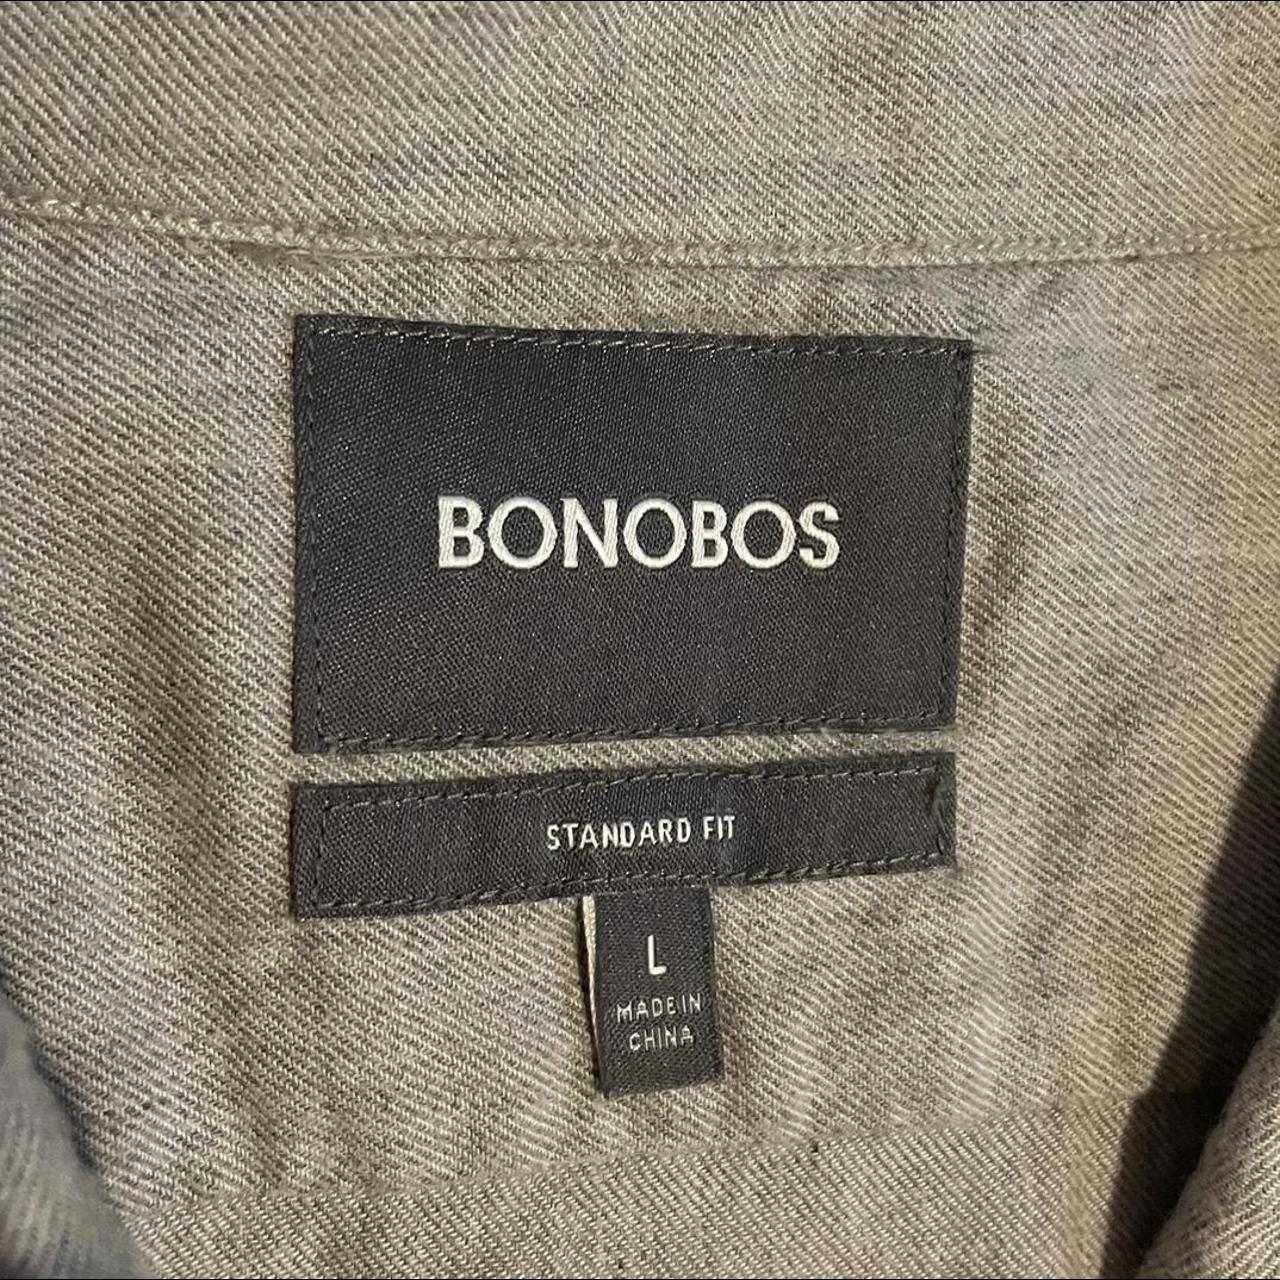 mens large bonobos grey button up shirt SUPER SOFT I... - Depop